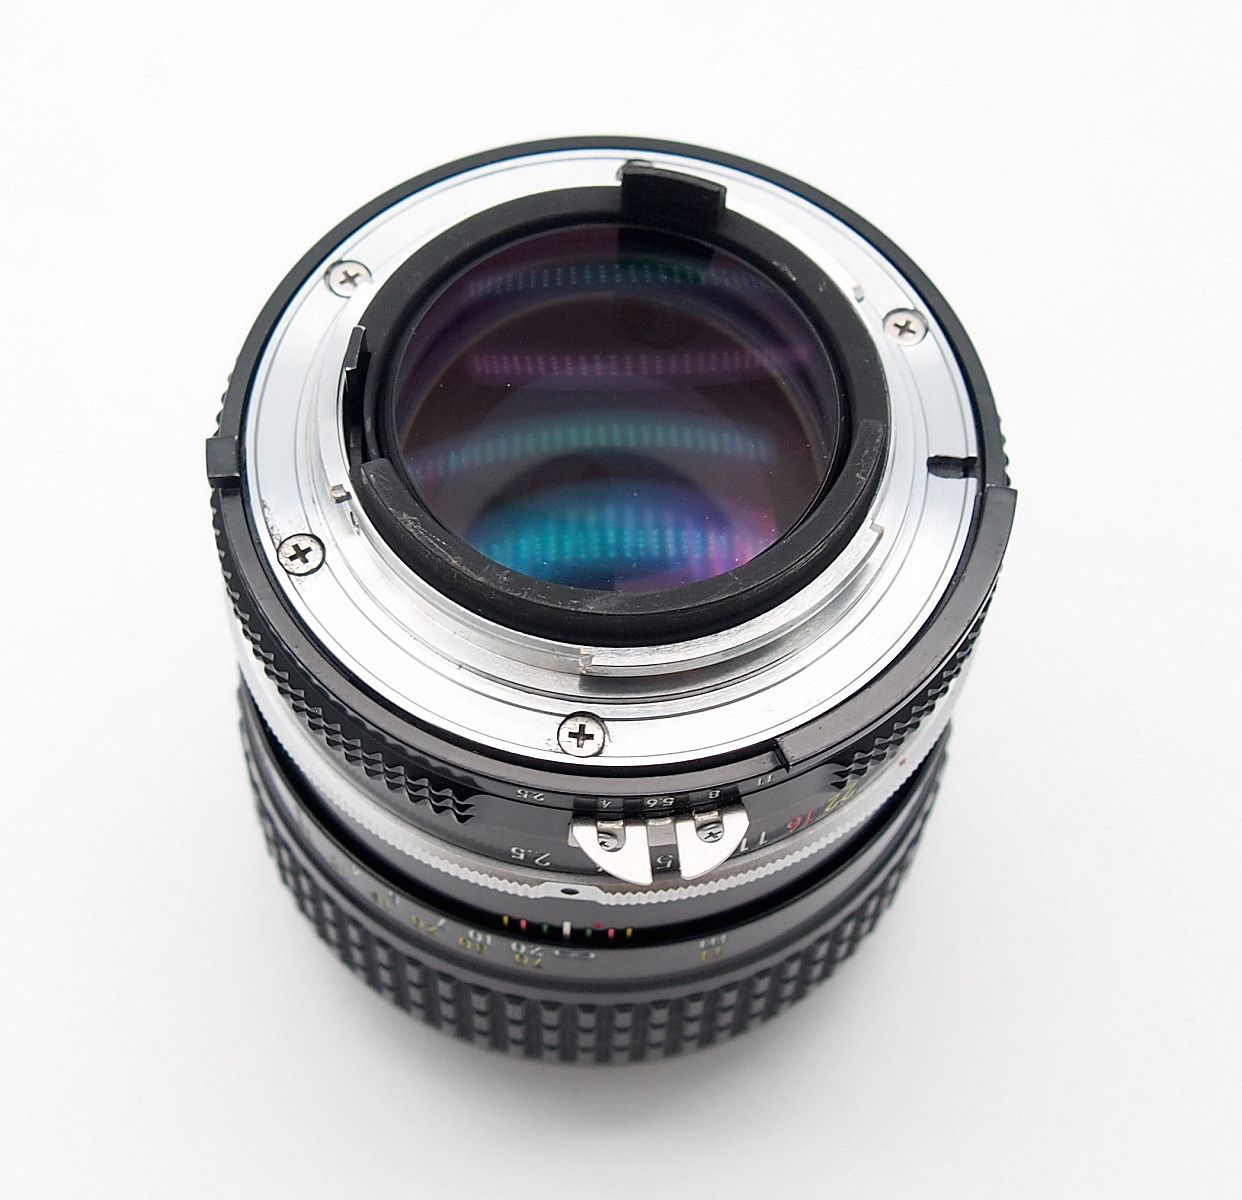 Nikon 105mm F2.5 Nikkor Ai Lens #8700